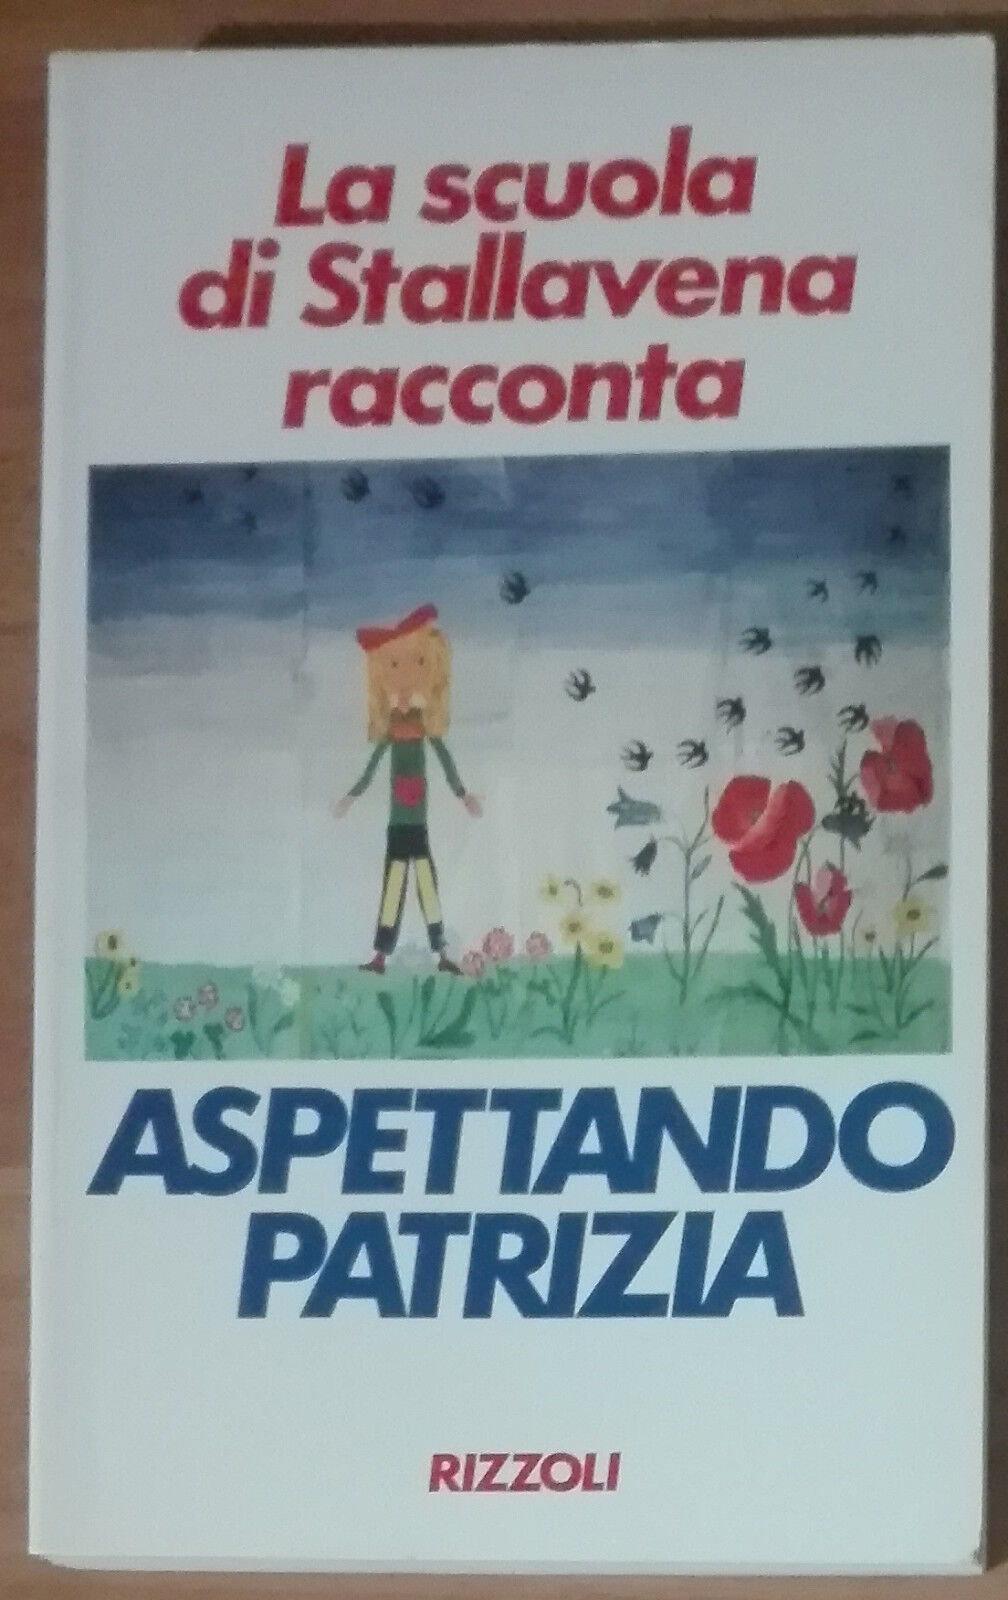 Aspettando Patrizia - AA.VV. -  Rizzoli,1990 - A